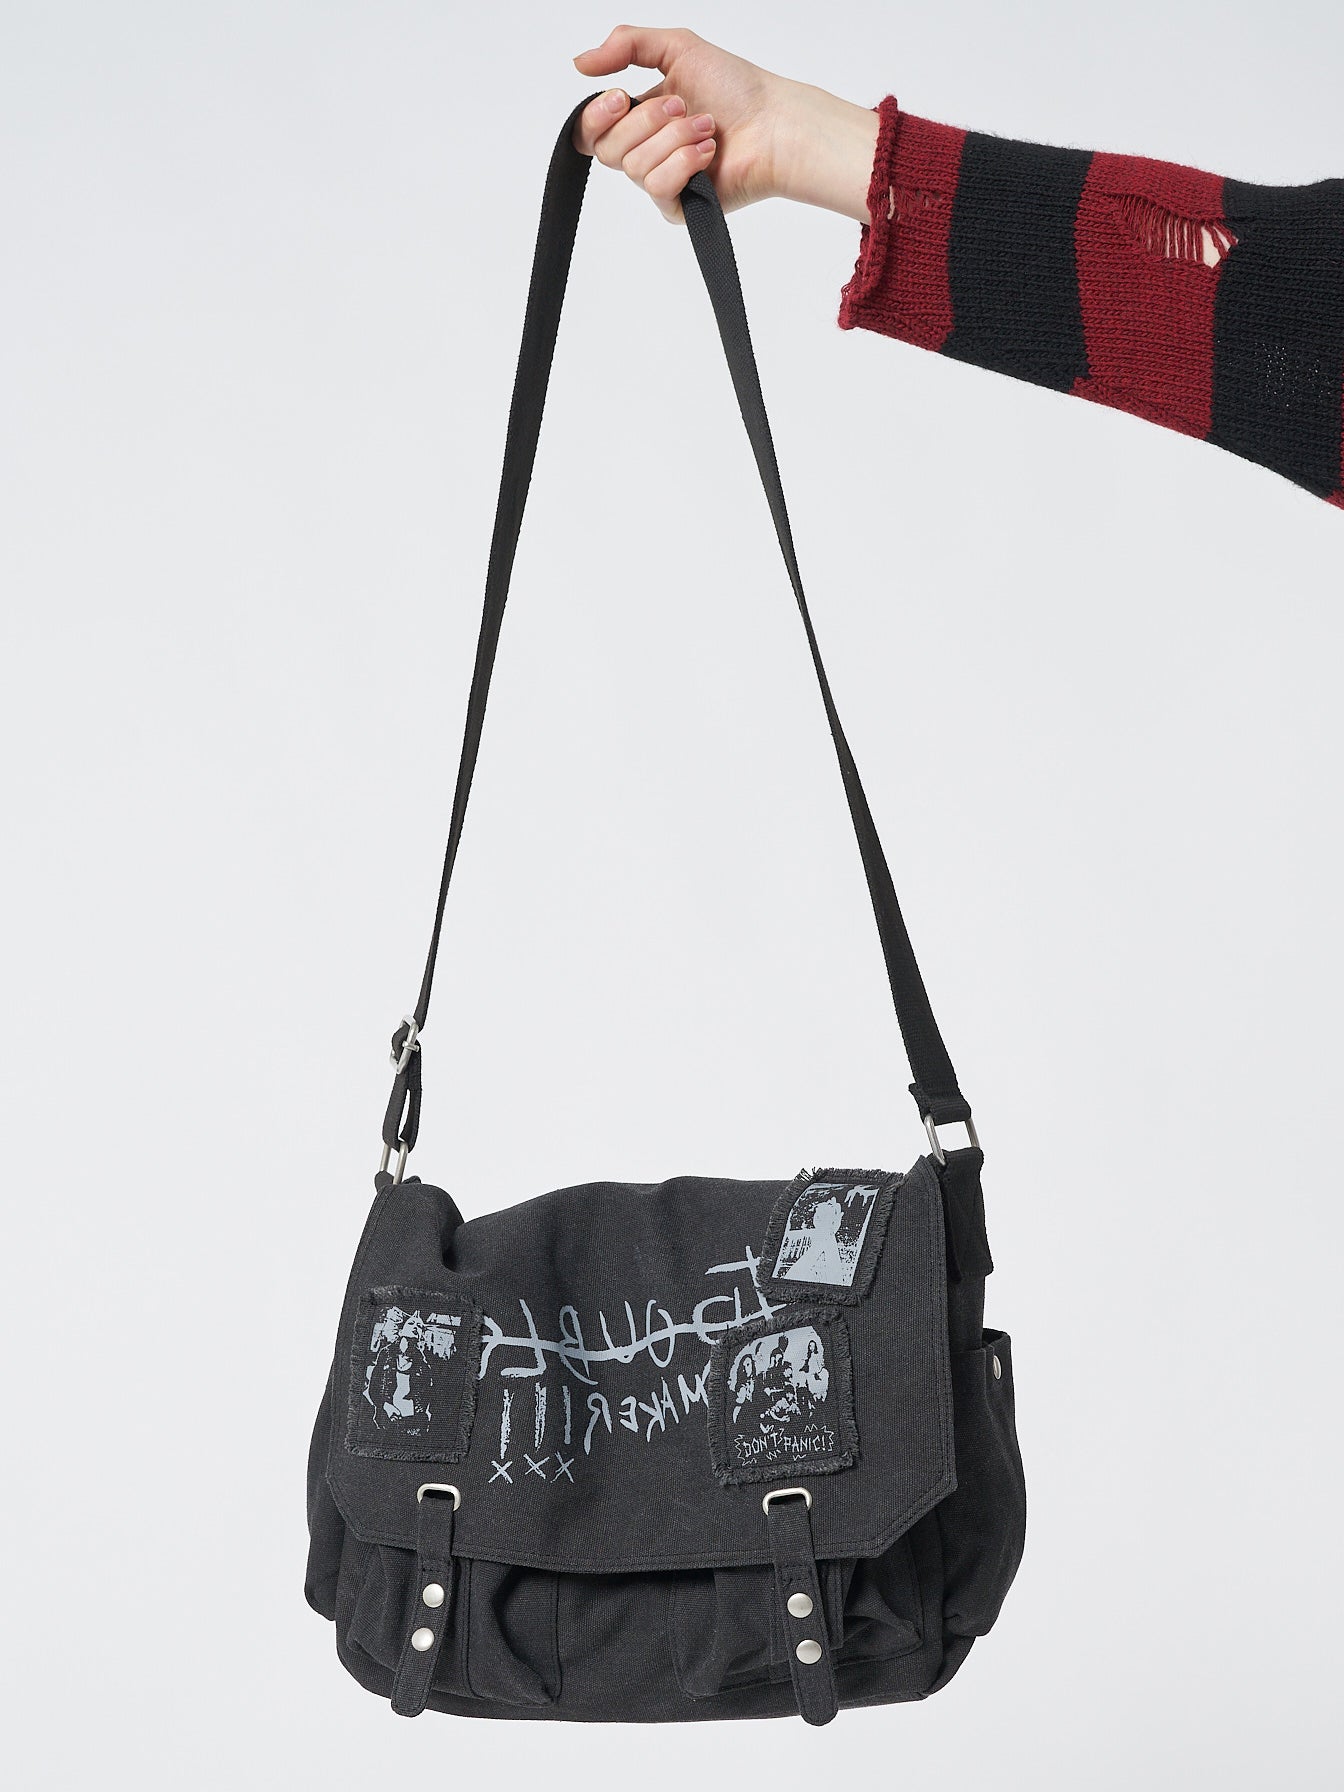 Troublemaker Black Canvas Messenger Bag